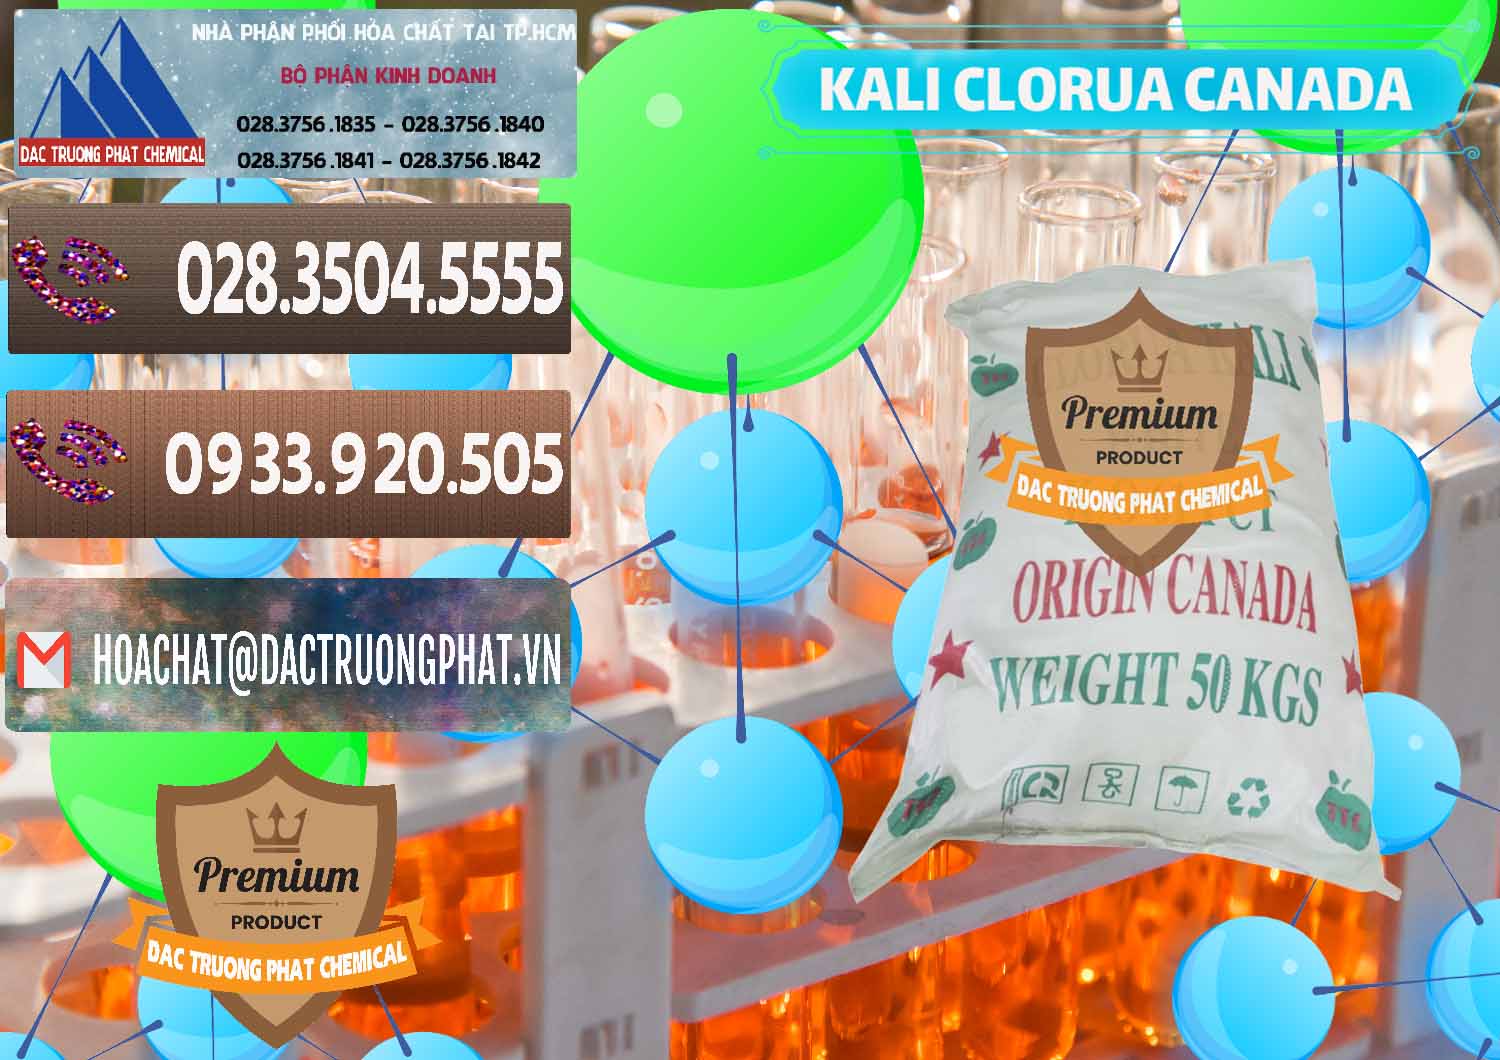 Cty chuyên nhập khẩu & bán KCL – Kali Clorua Trắng Canada - 0437 - Công ty chuyên phân phối ( cung ứng ) hóa chất tại TP.HCM - hoachatviet.net